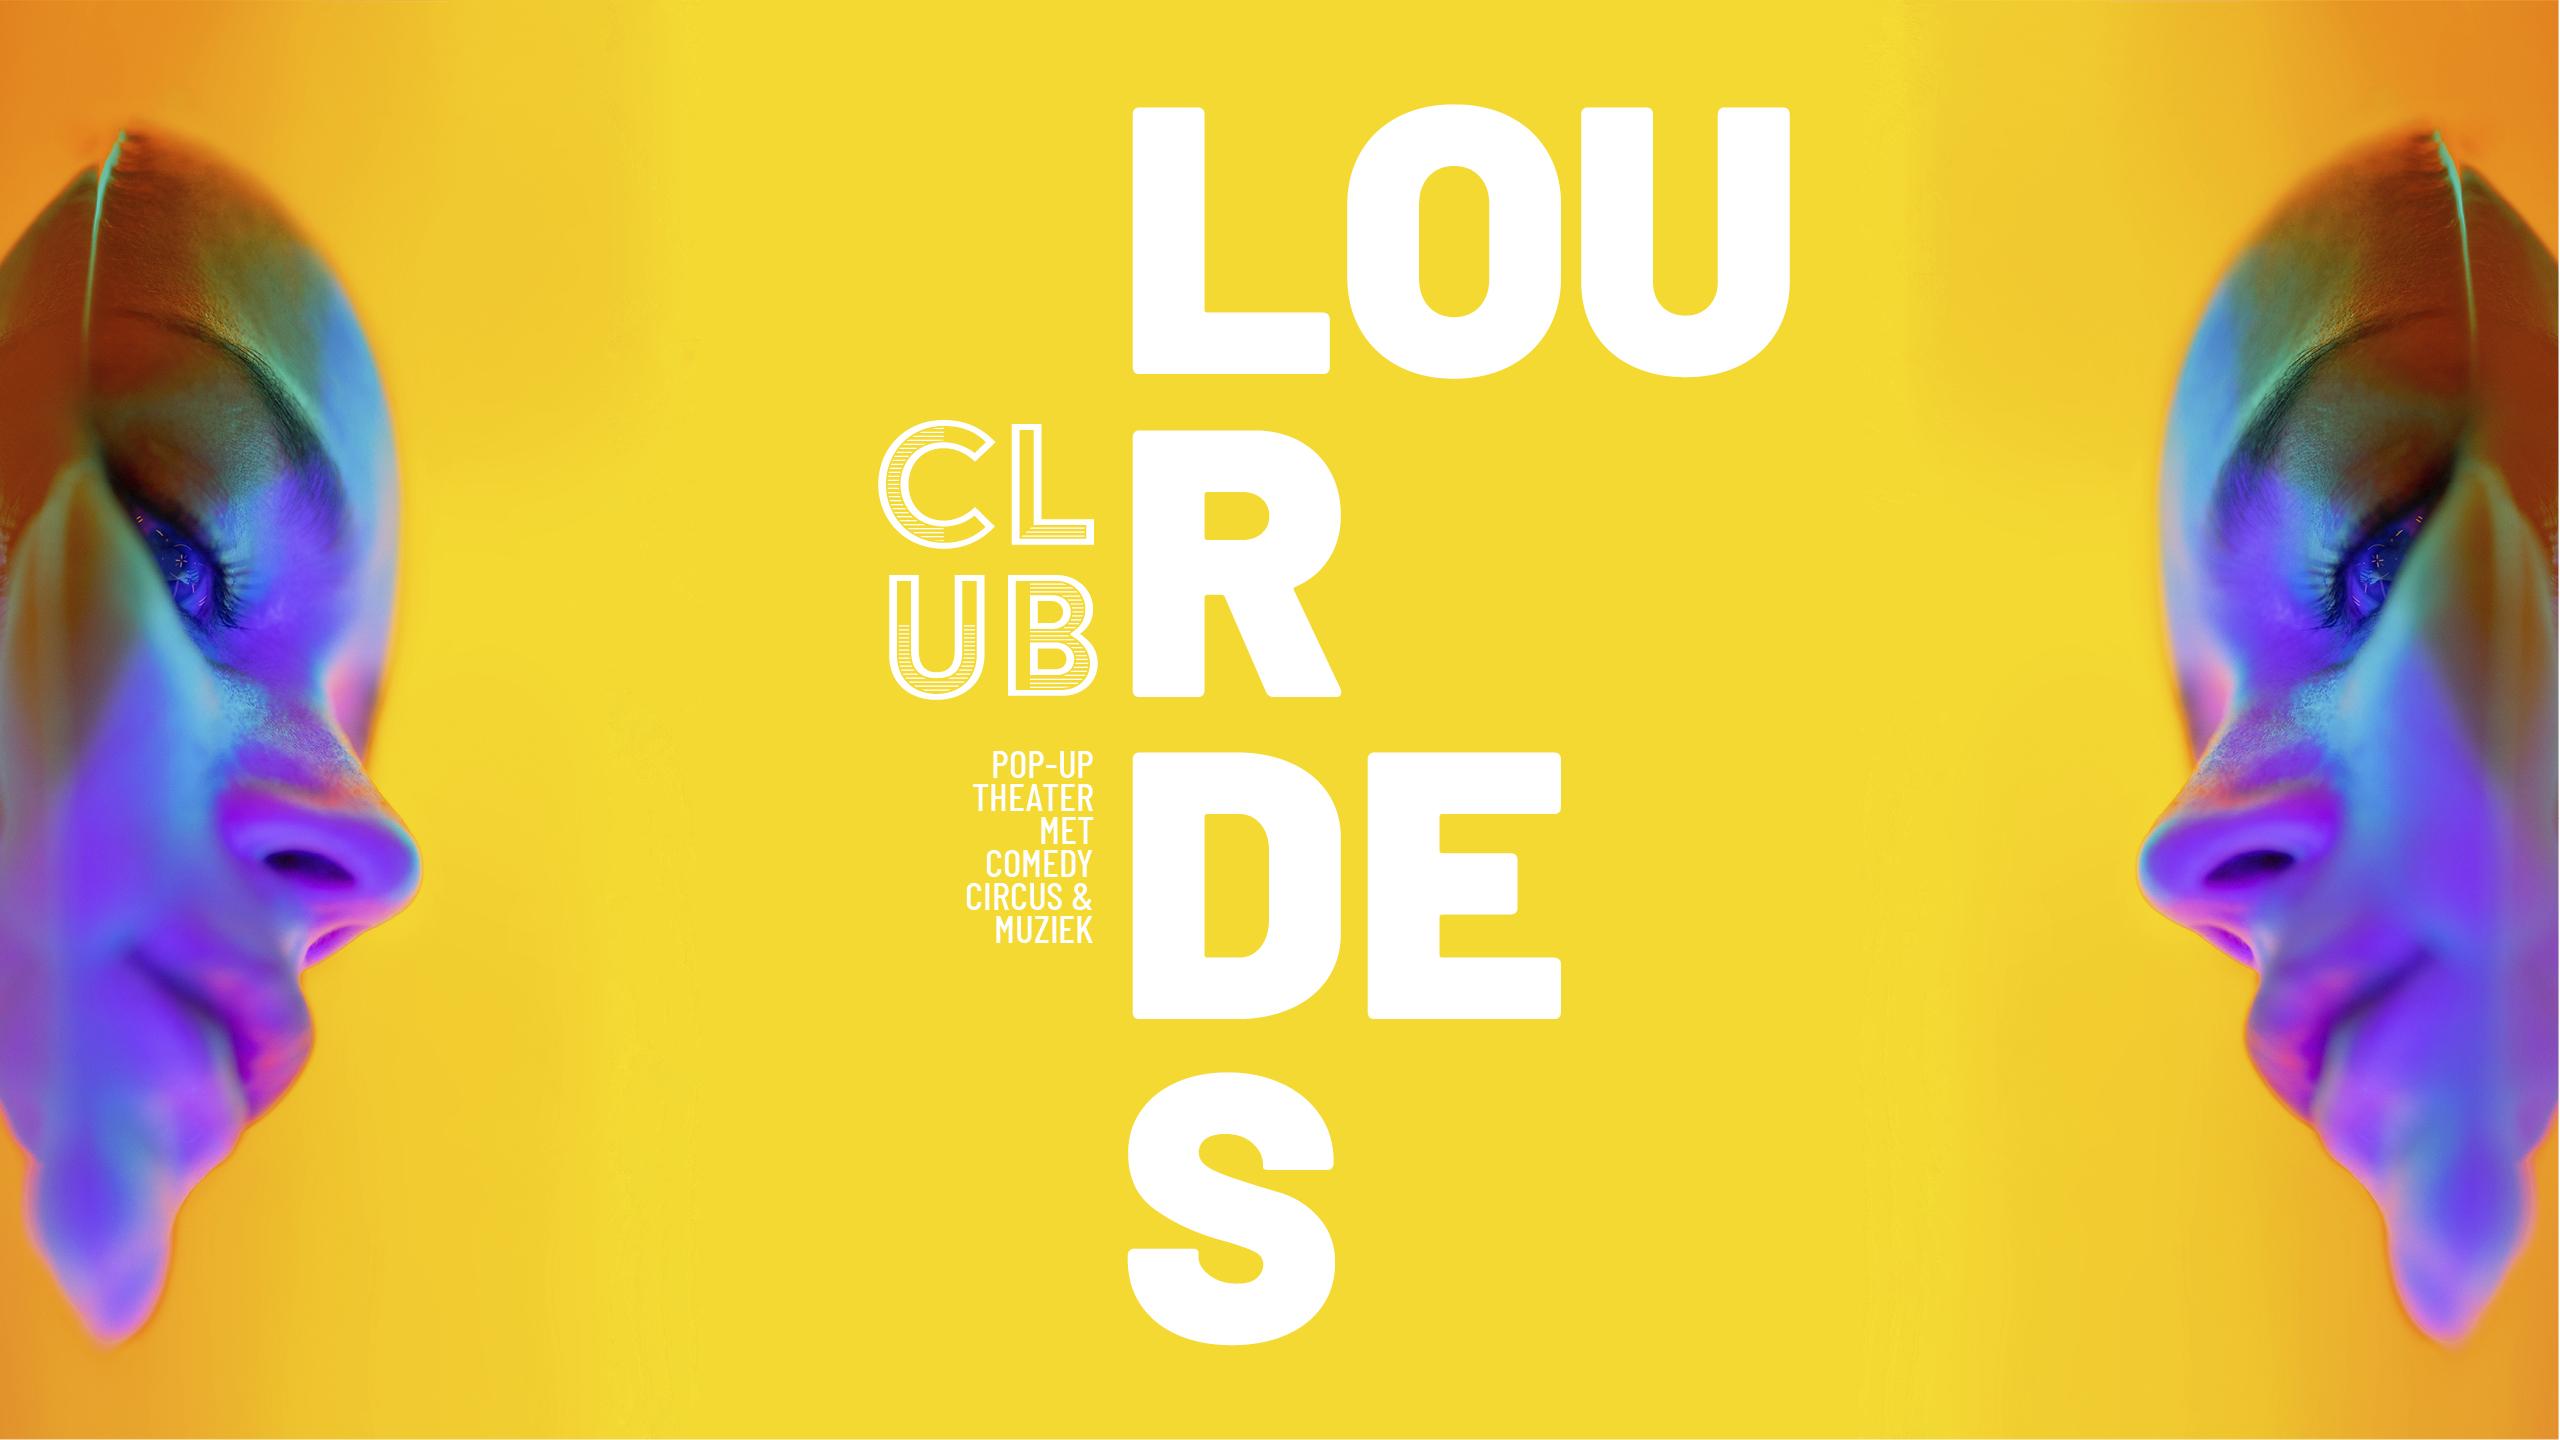 Club Lourdes identiteit